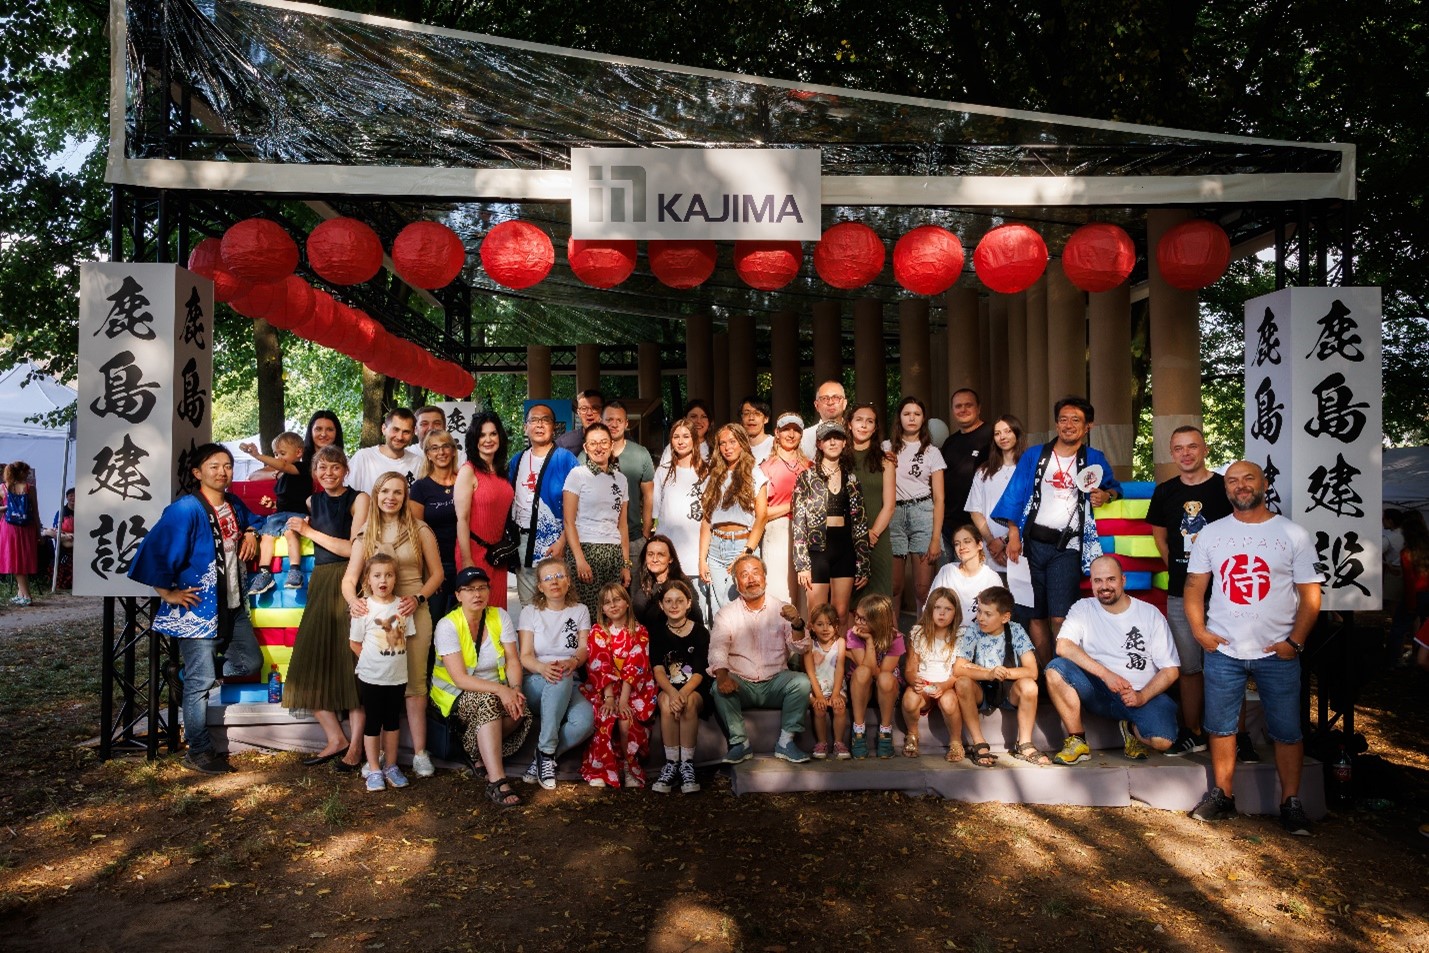 Kajima Poland angażuje się w działania CSR stawiając na promocję kultury japońskiej